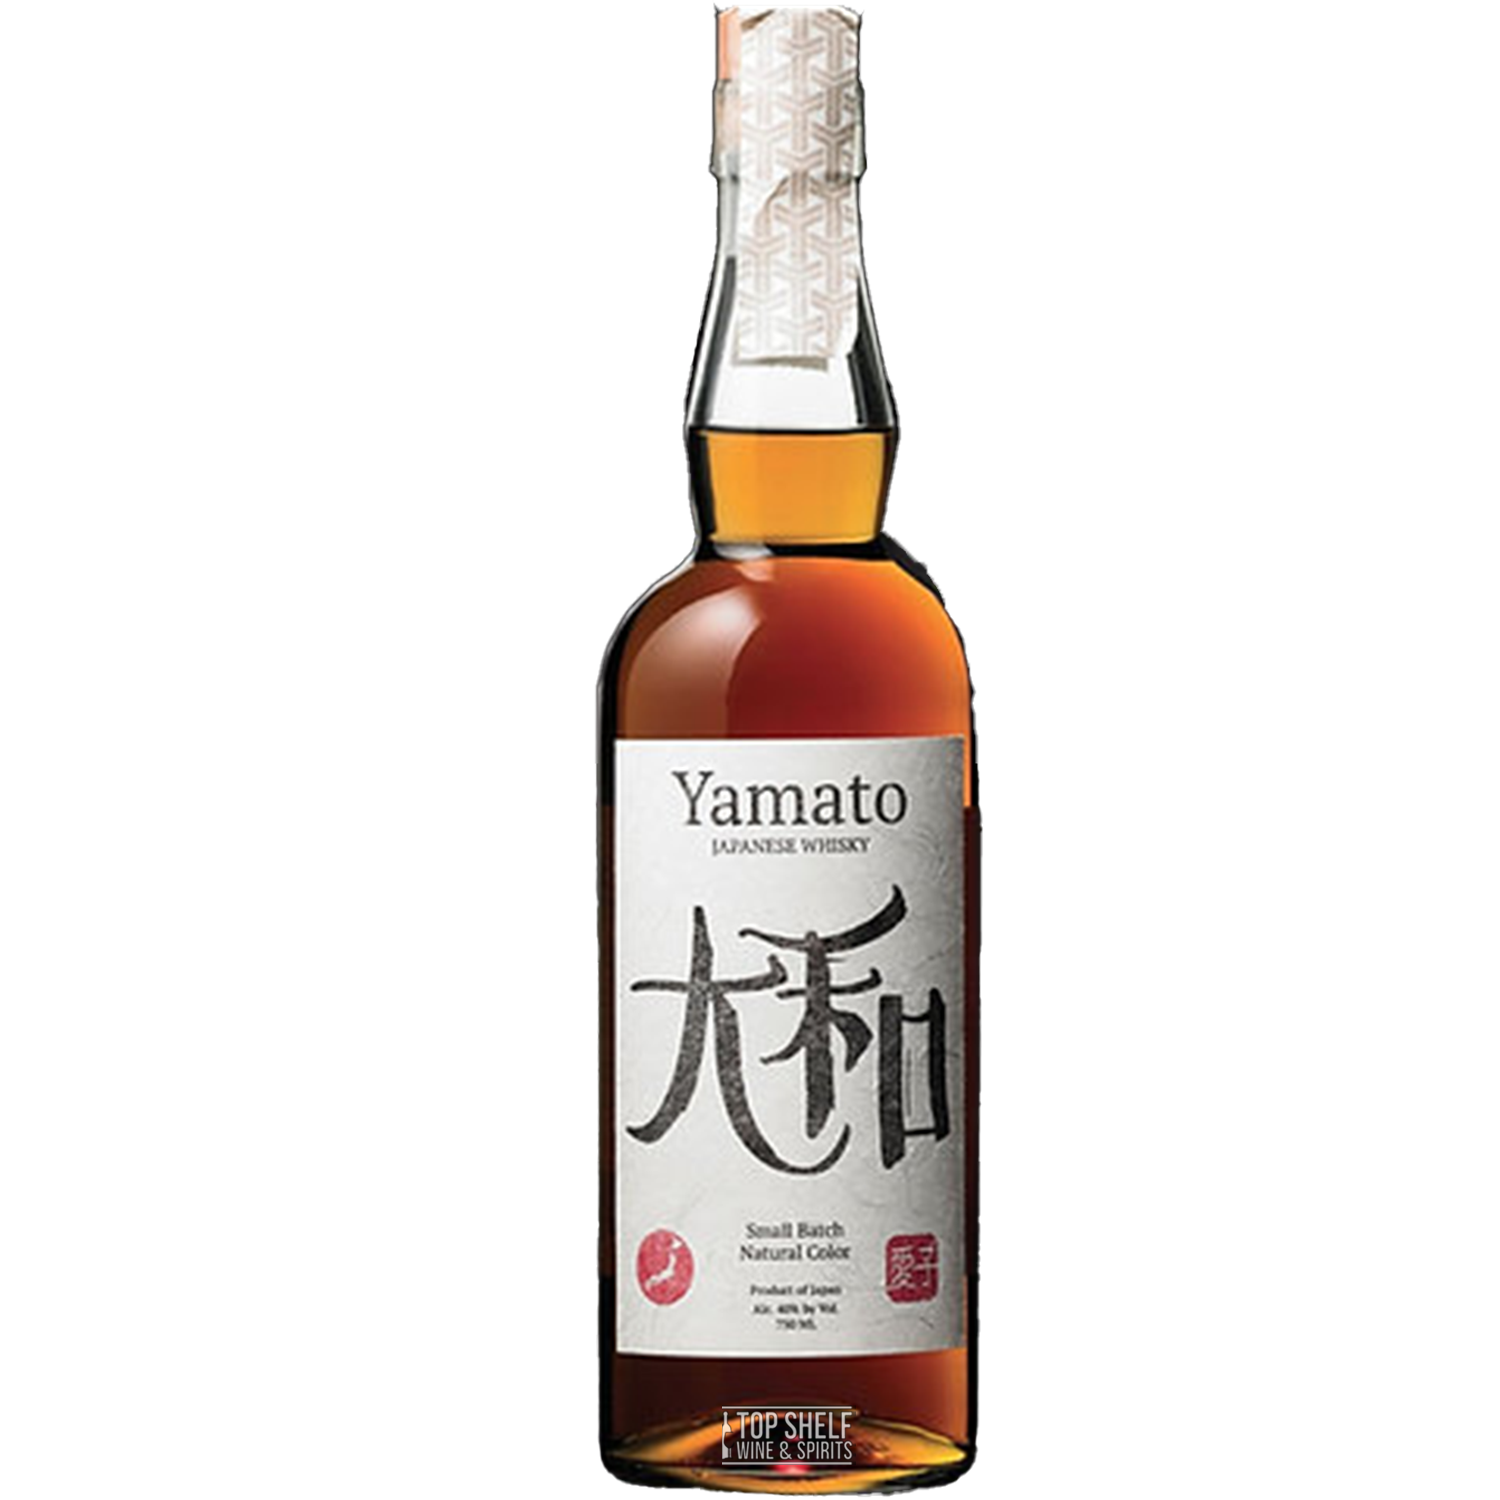 Yamato Mizunara Small Batch Japanese Whisky